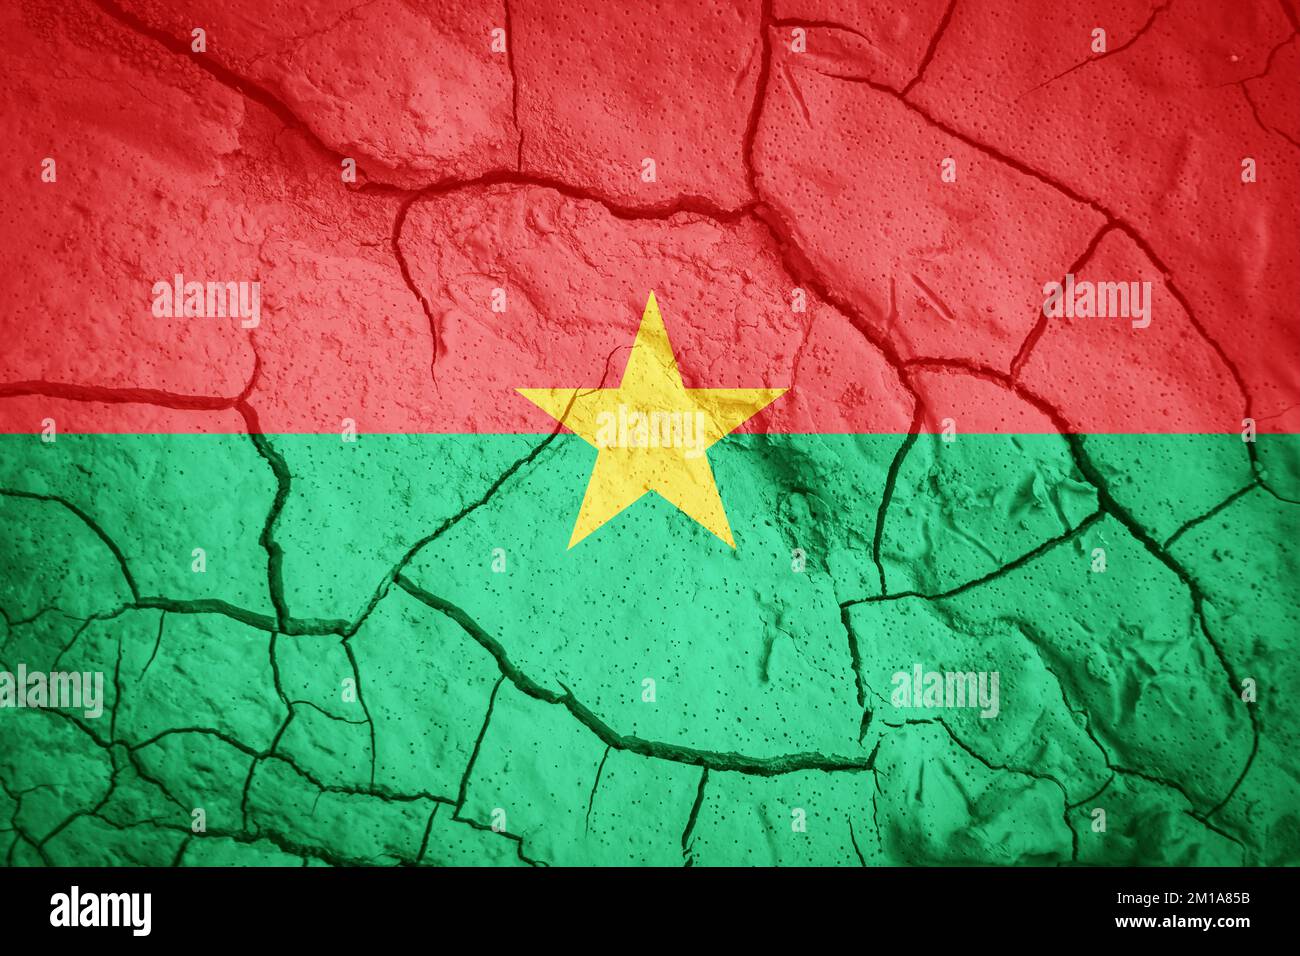 Drapeau du Burkina Faso. Symbole Burkina Faso. Drapeau sur fond de terre sèche fissurée. Burkina Faso drapeau avec concept de sécheresse Banque D'Images